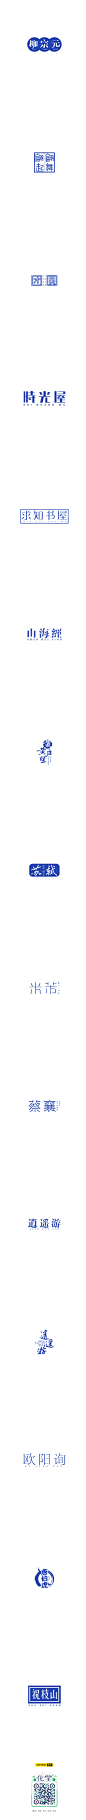 山中道人字标-字体传奇网-中国首个字体品牌设计师交流网